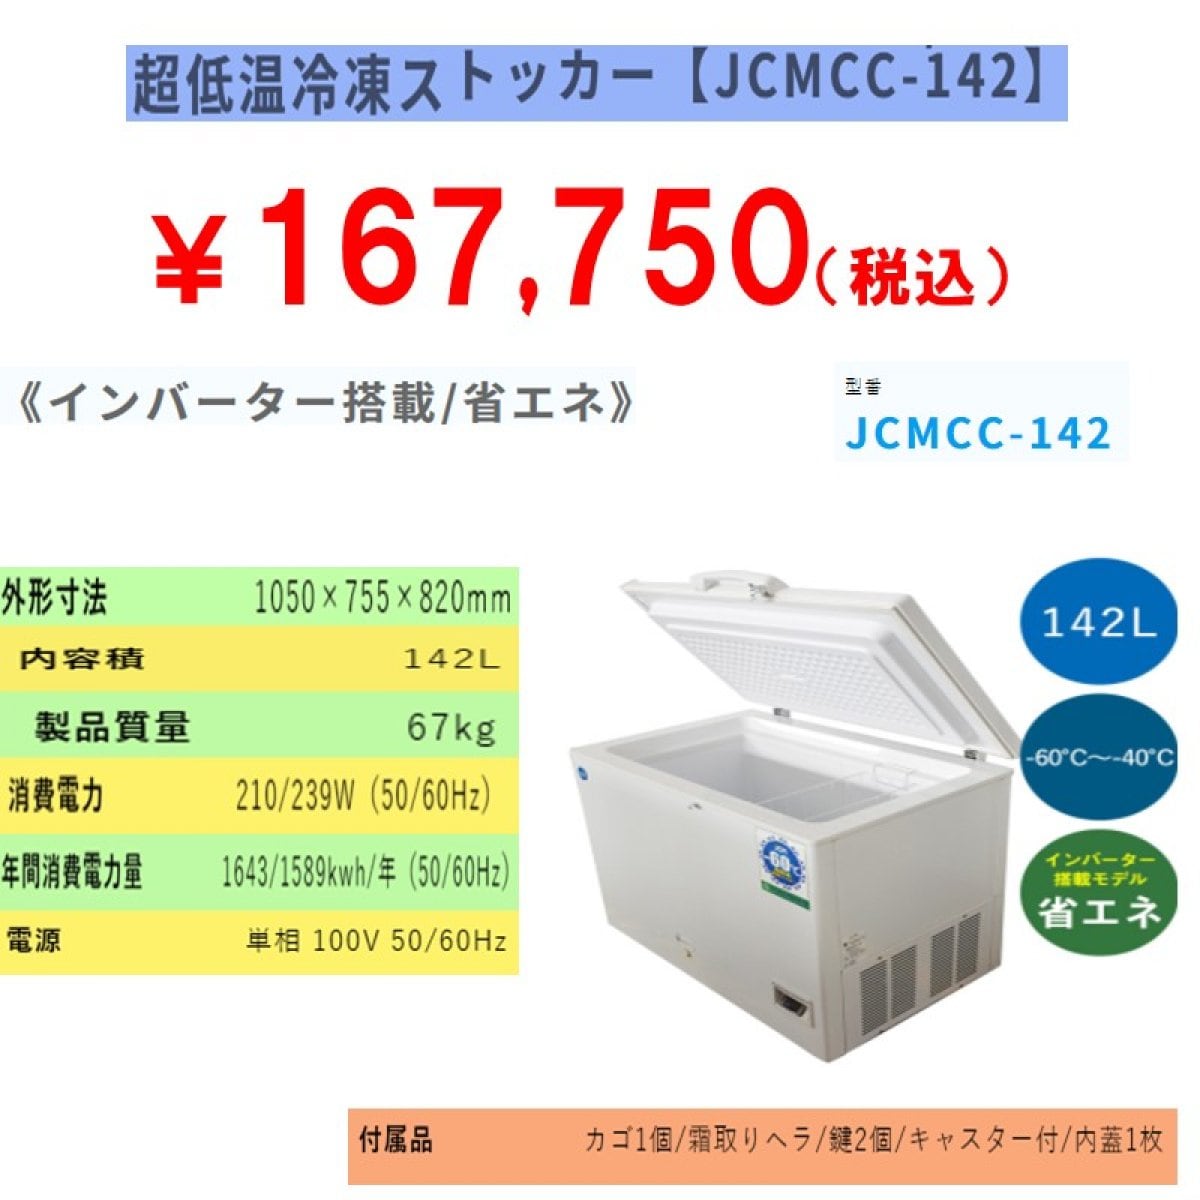 業務用超低温冷凍ストッカー 142L [JCMCC-142]